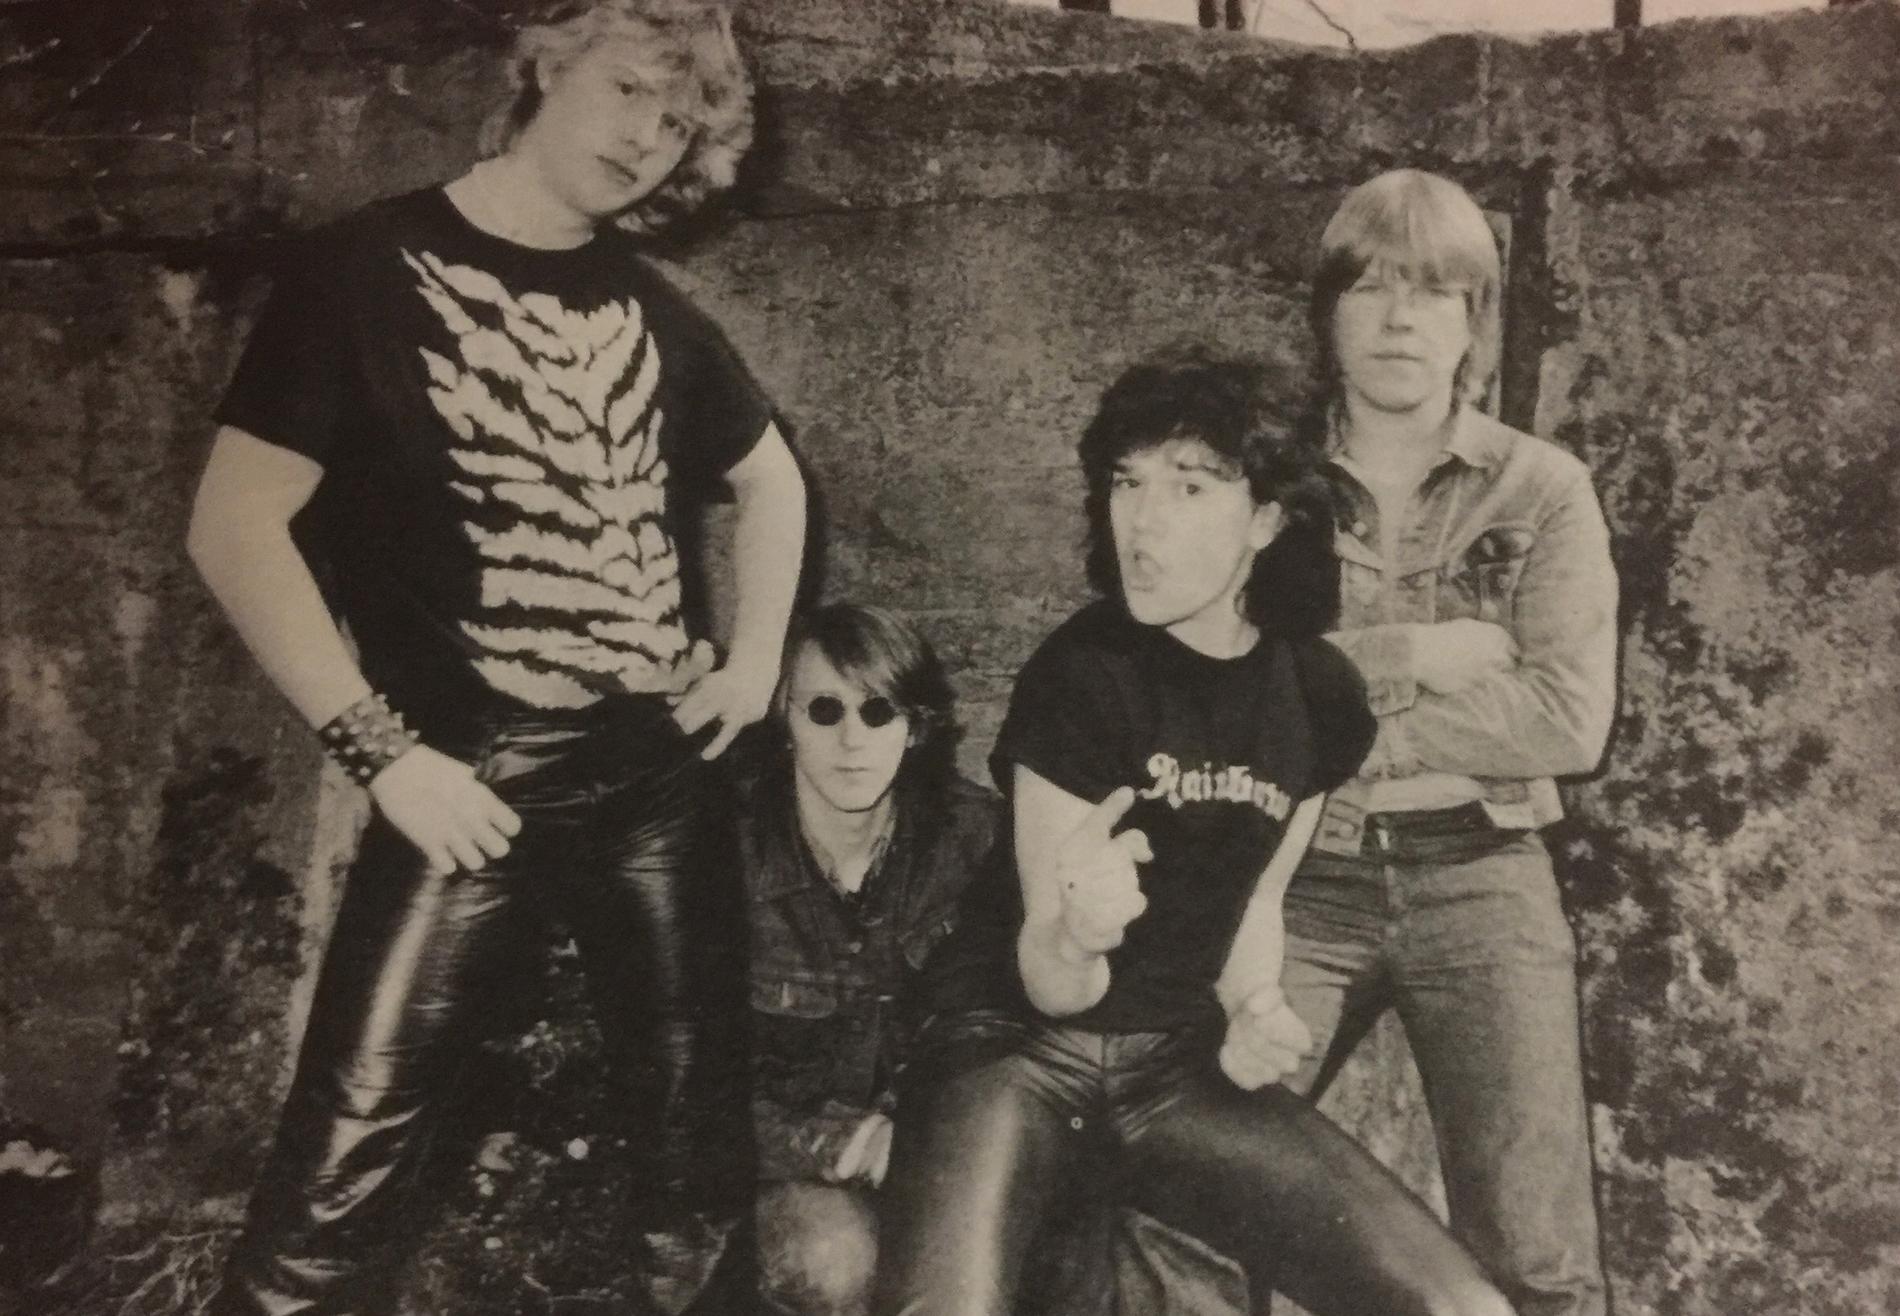 Trazer är ett av banden på ”Jobcentre rejects vol 4: ultra rare FWOSHM 1978–1983”, som lyfter fram tidig, förbisedd svensk hårdrock.